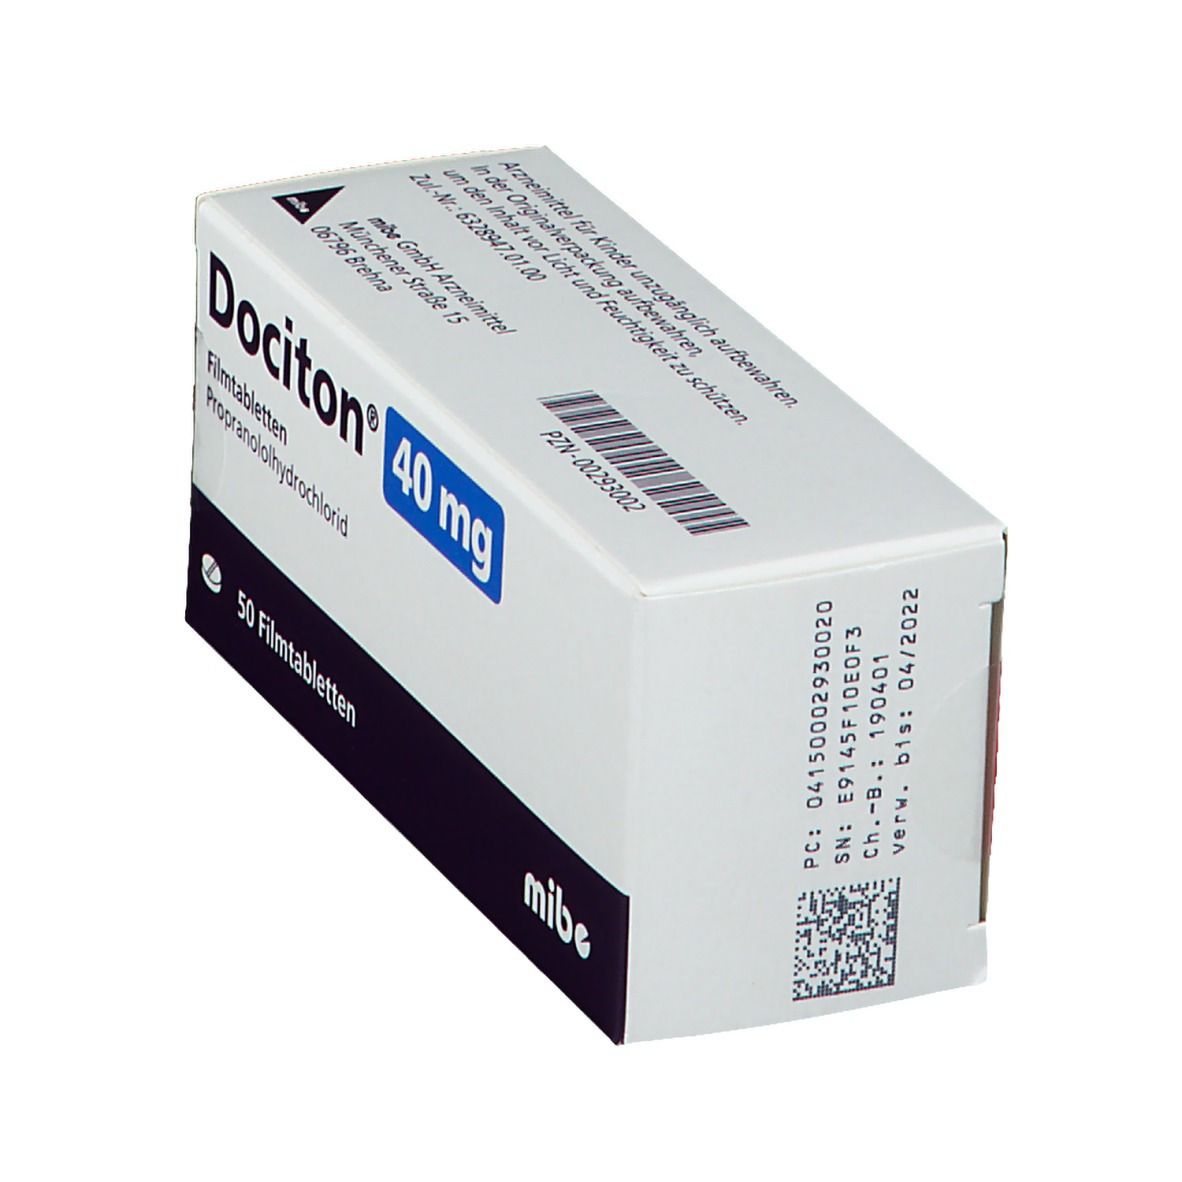 Dociton 40 mg